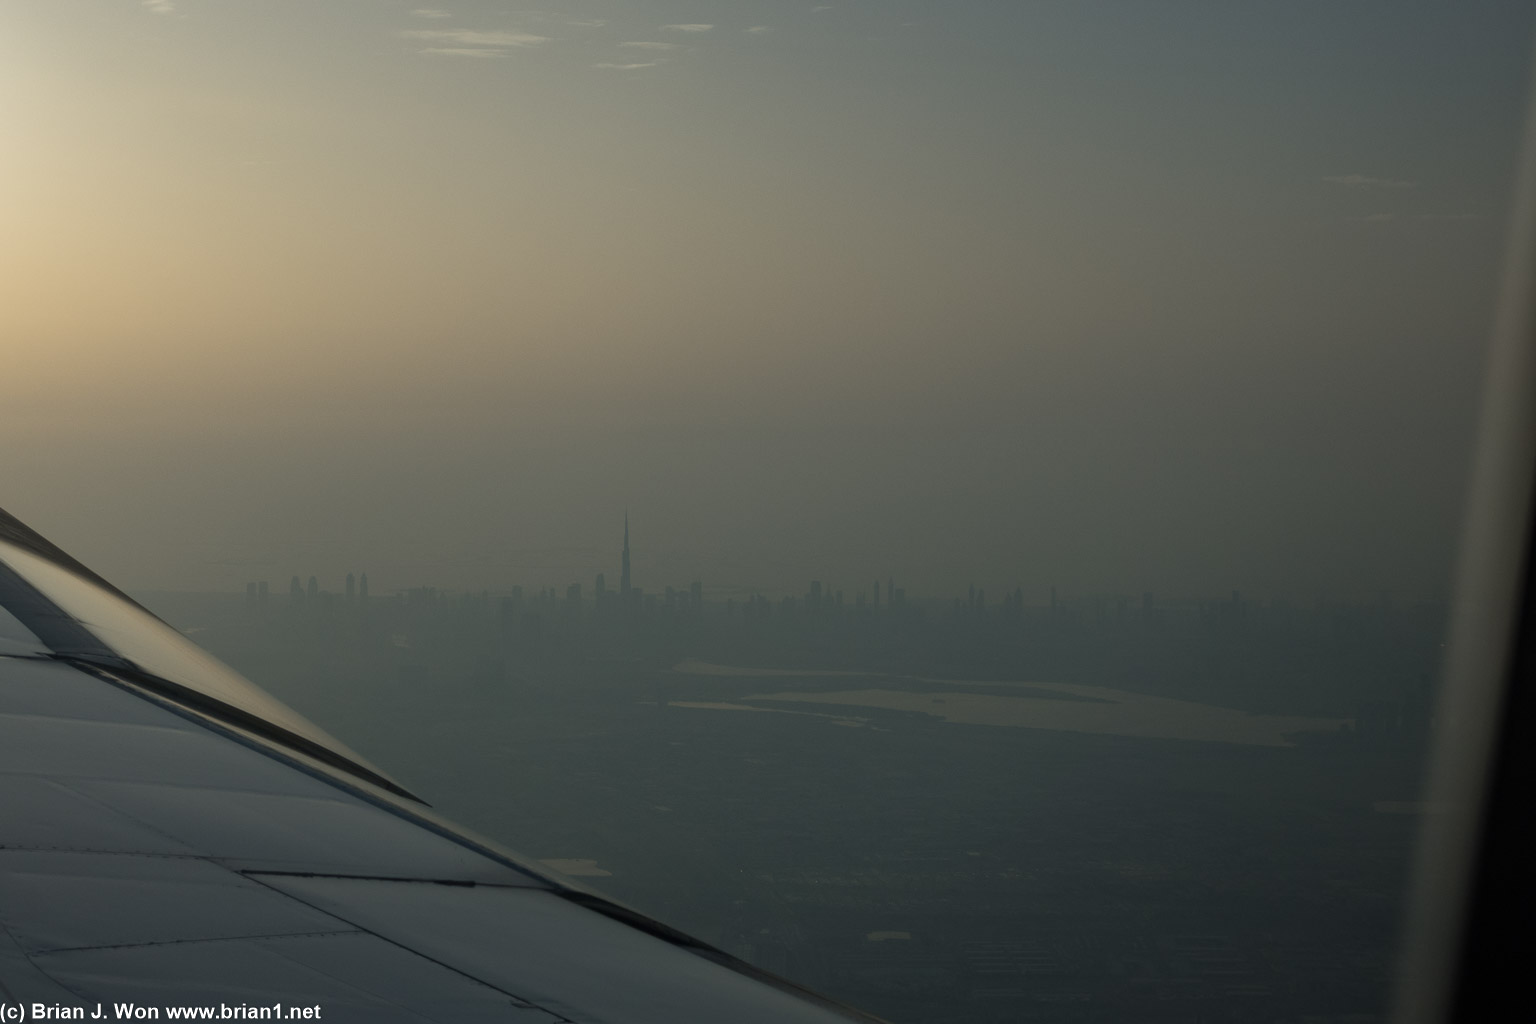 Dubai in the distance.